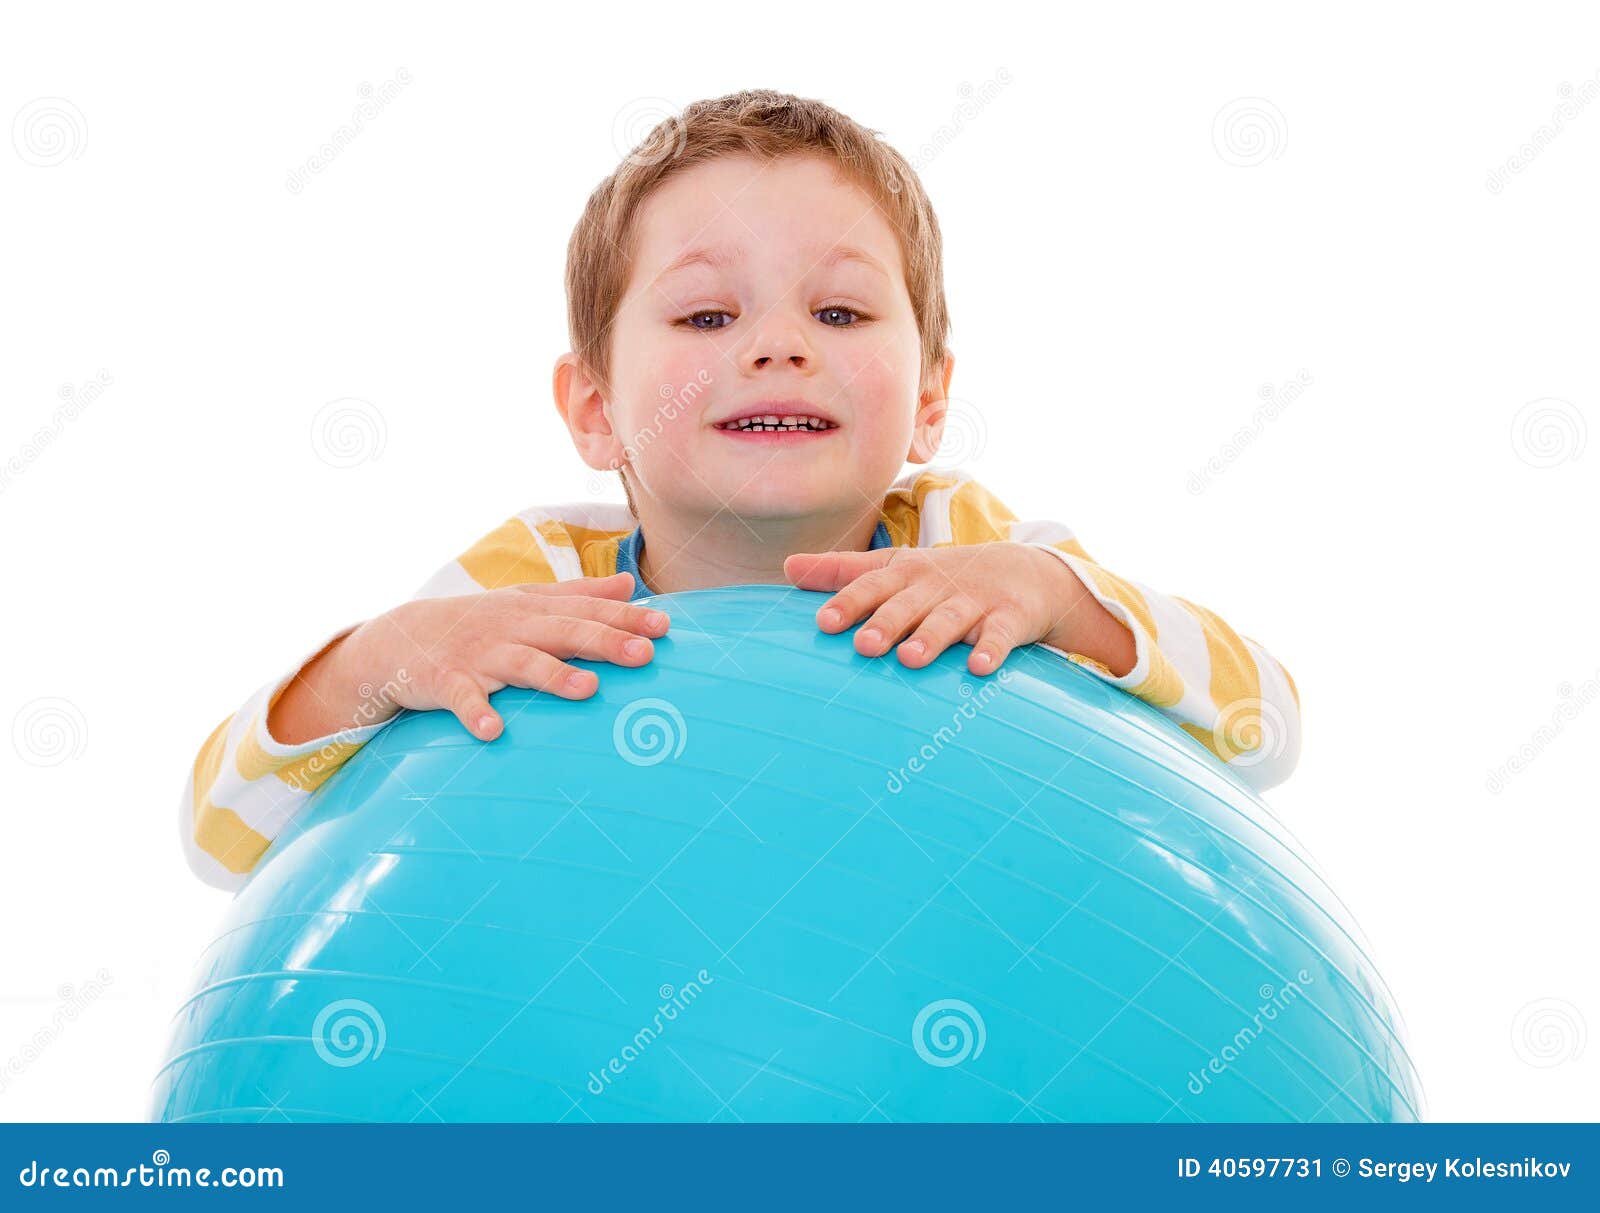 Мальчик с большим шаром. Ребенок с большим мячом. Мальчик с большим мячиком. Дети попадают в большой мяч маленьким. Фото голова ребёнка на большой мяче.